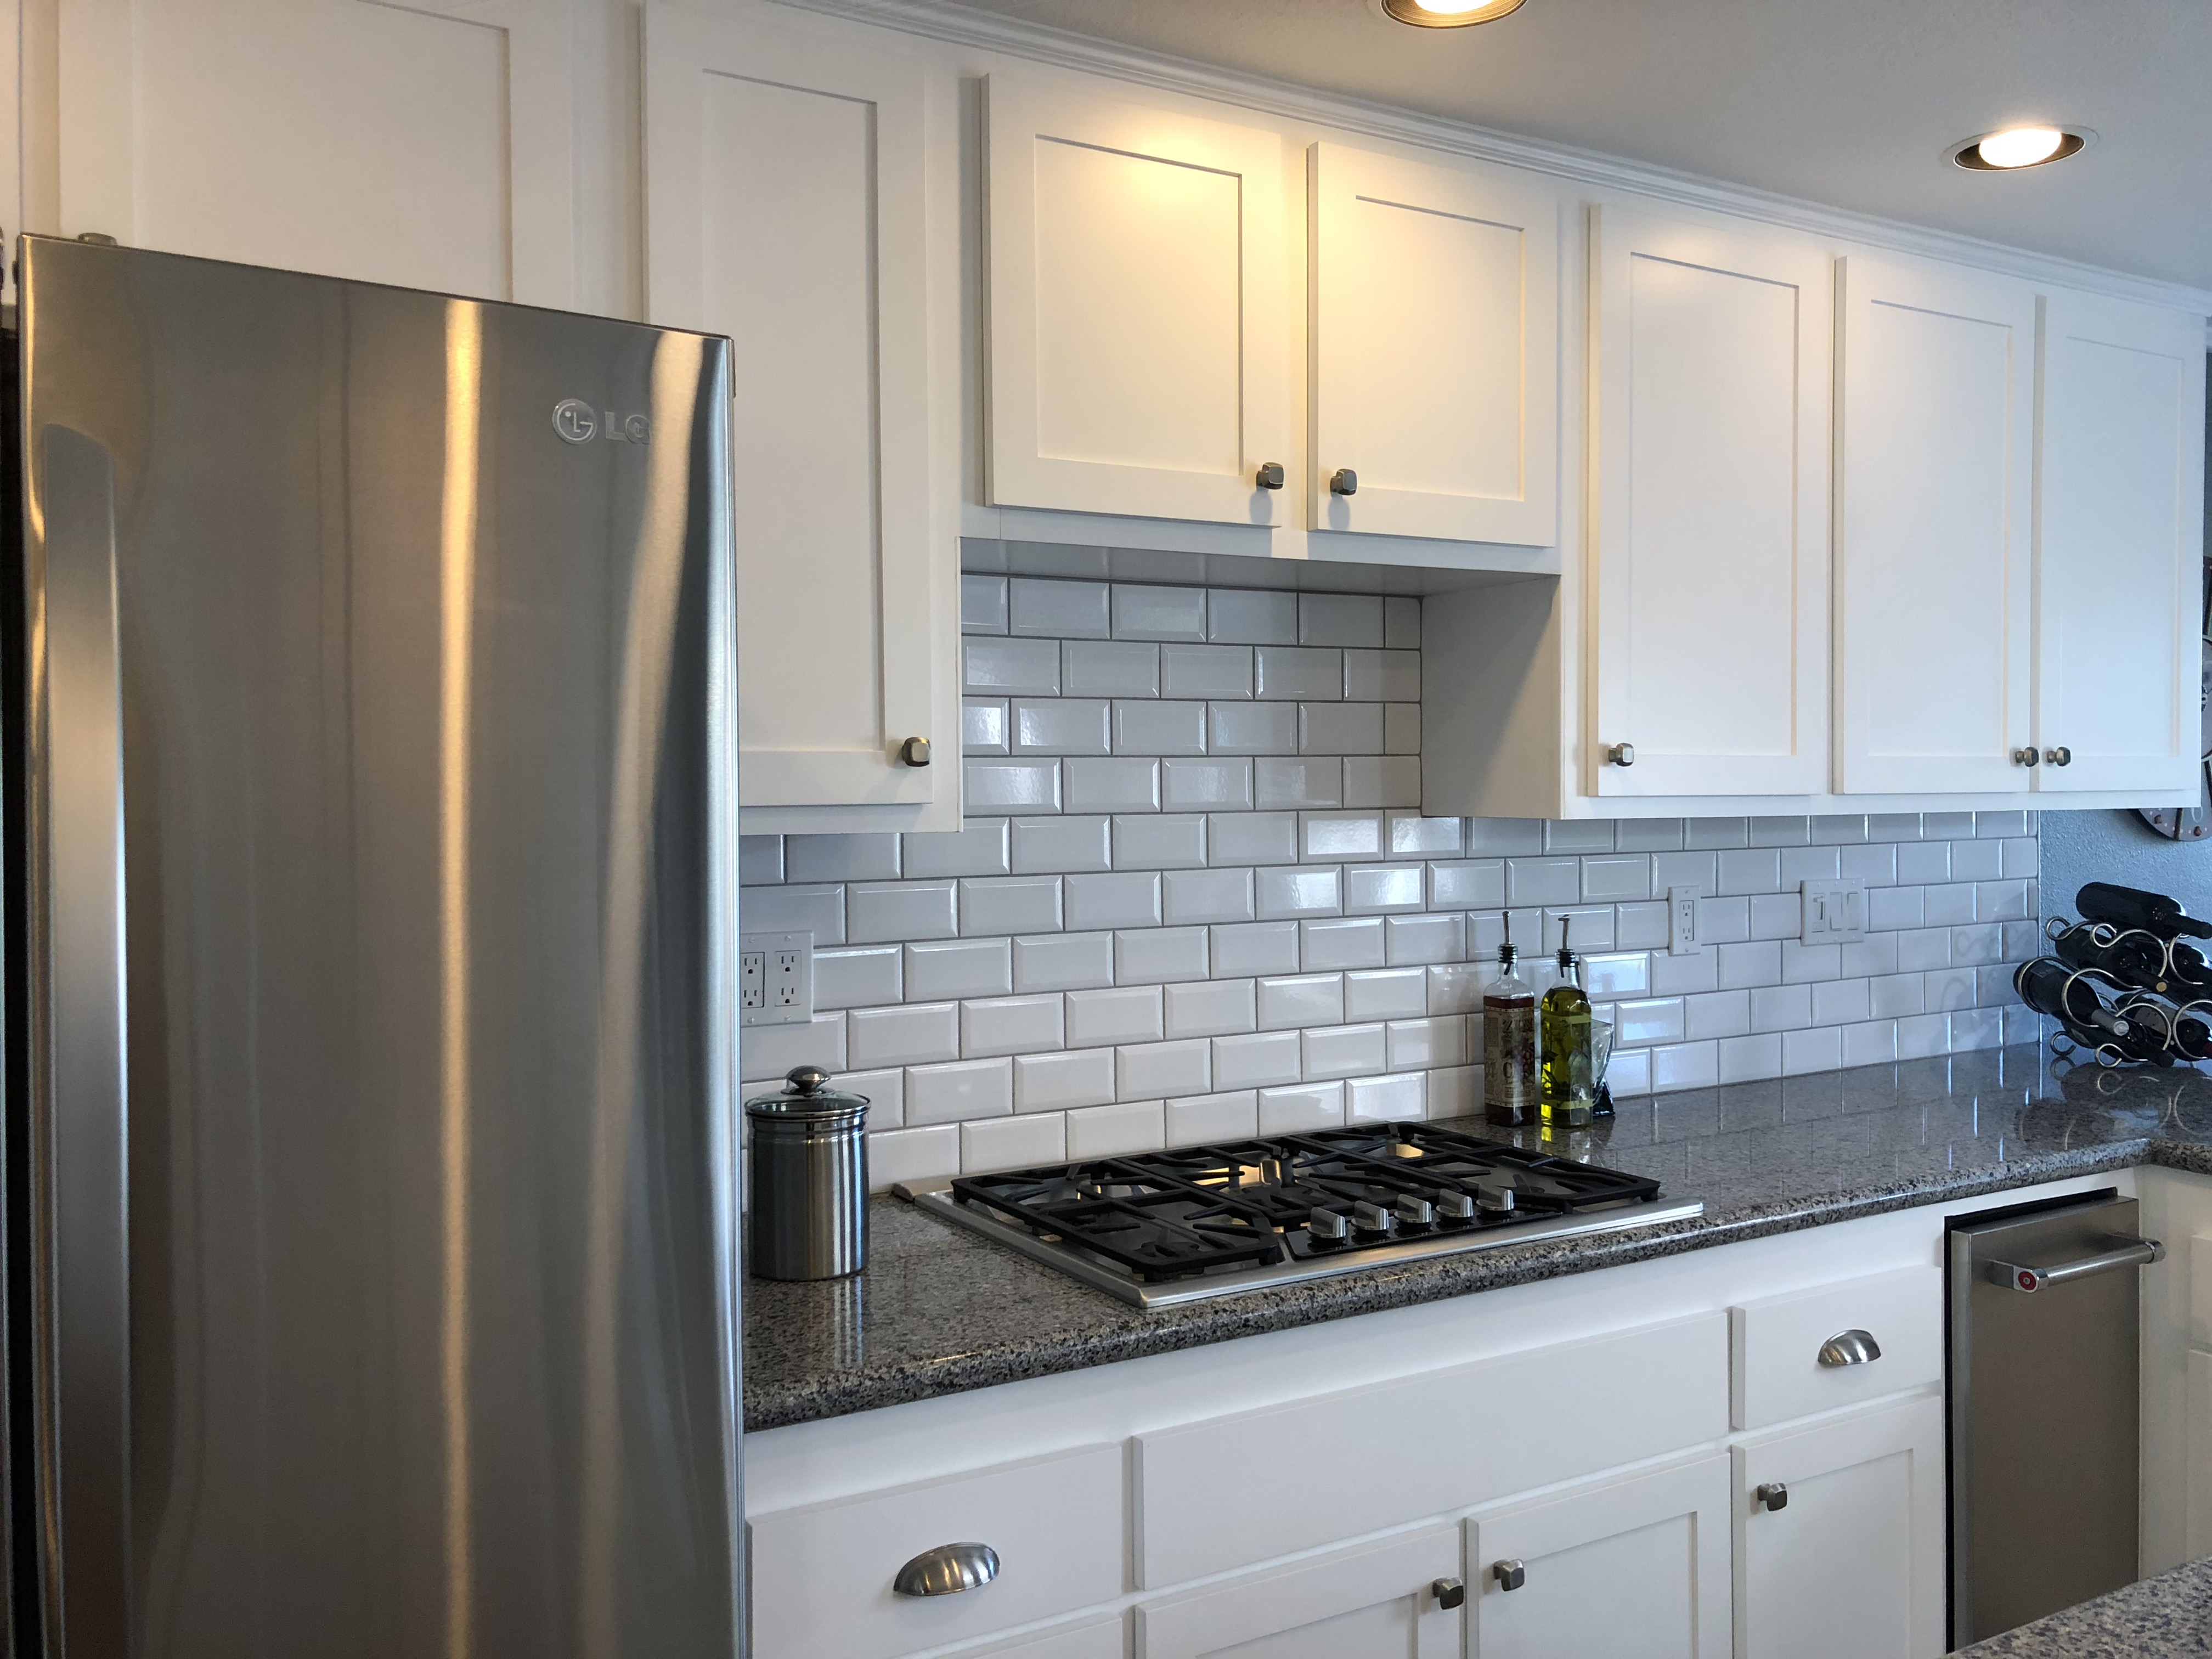 Kitchen Cabinet Refacing Boulder City Nv Reborn